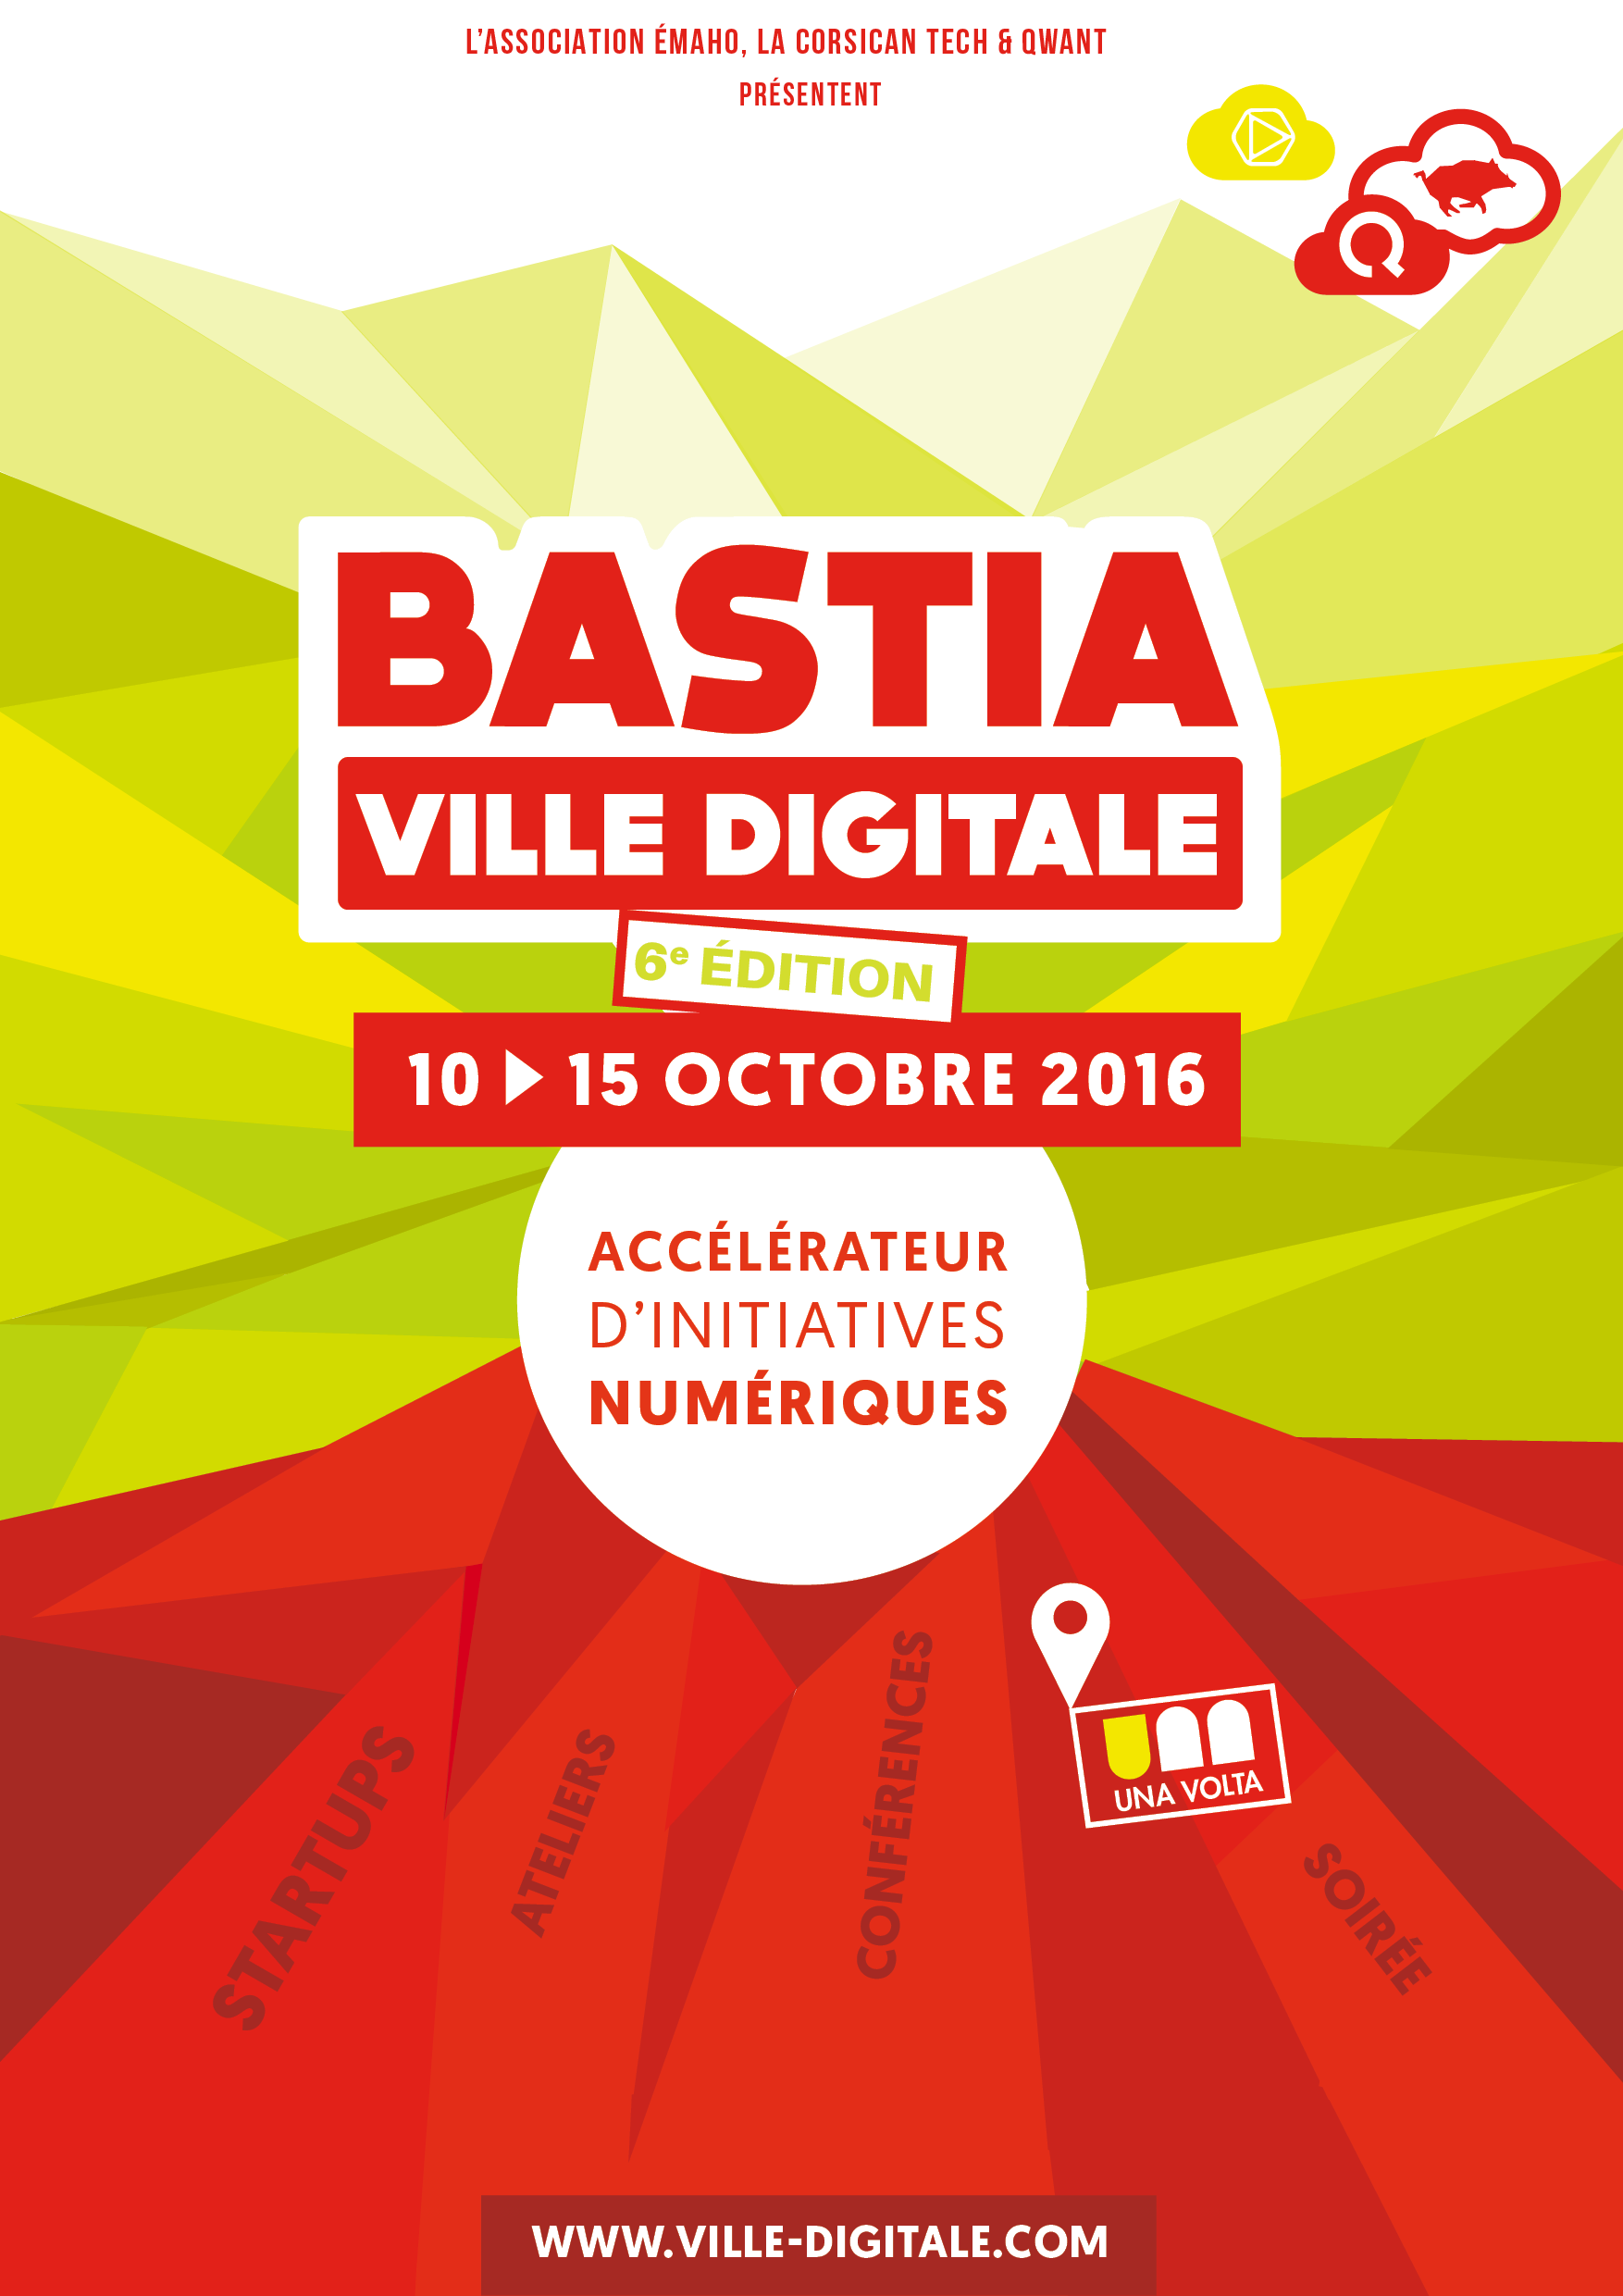 Bastia Ville Digitale : Du 10 au 15 octobre, la 6ème édition ! 